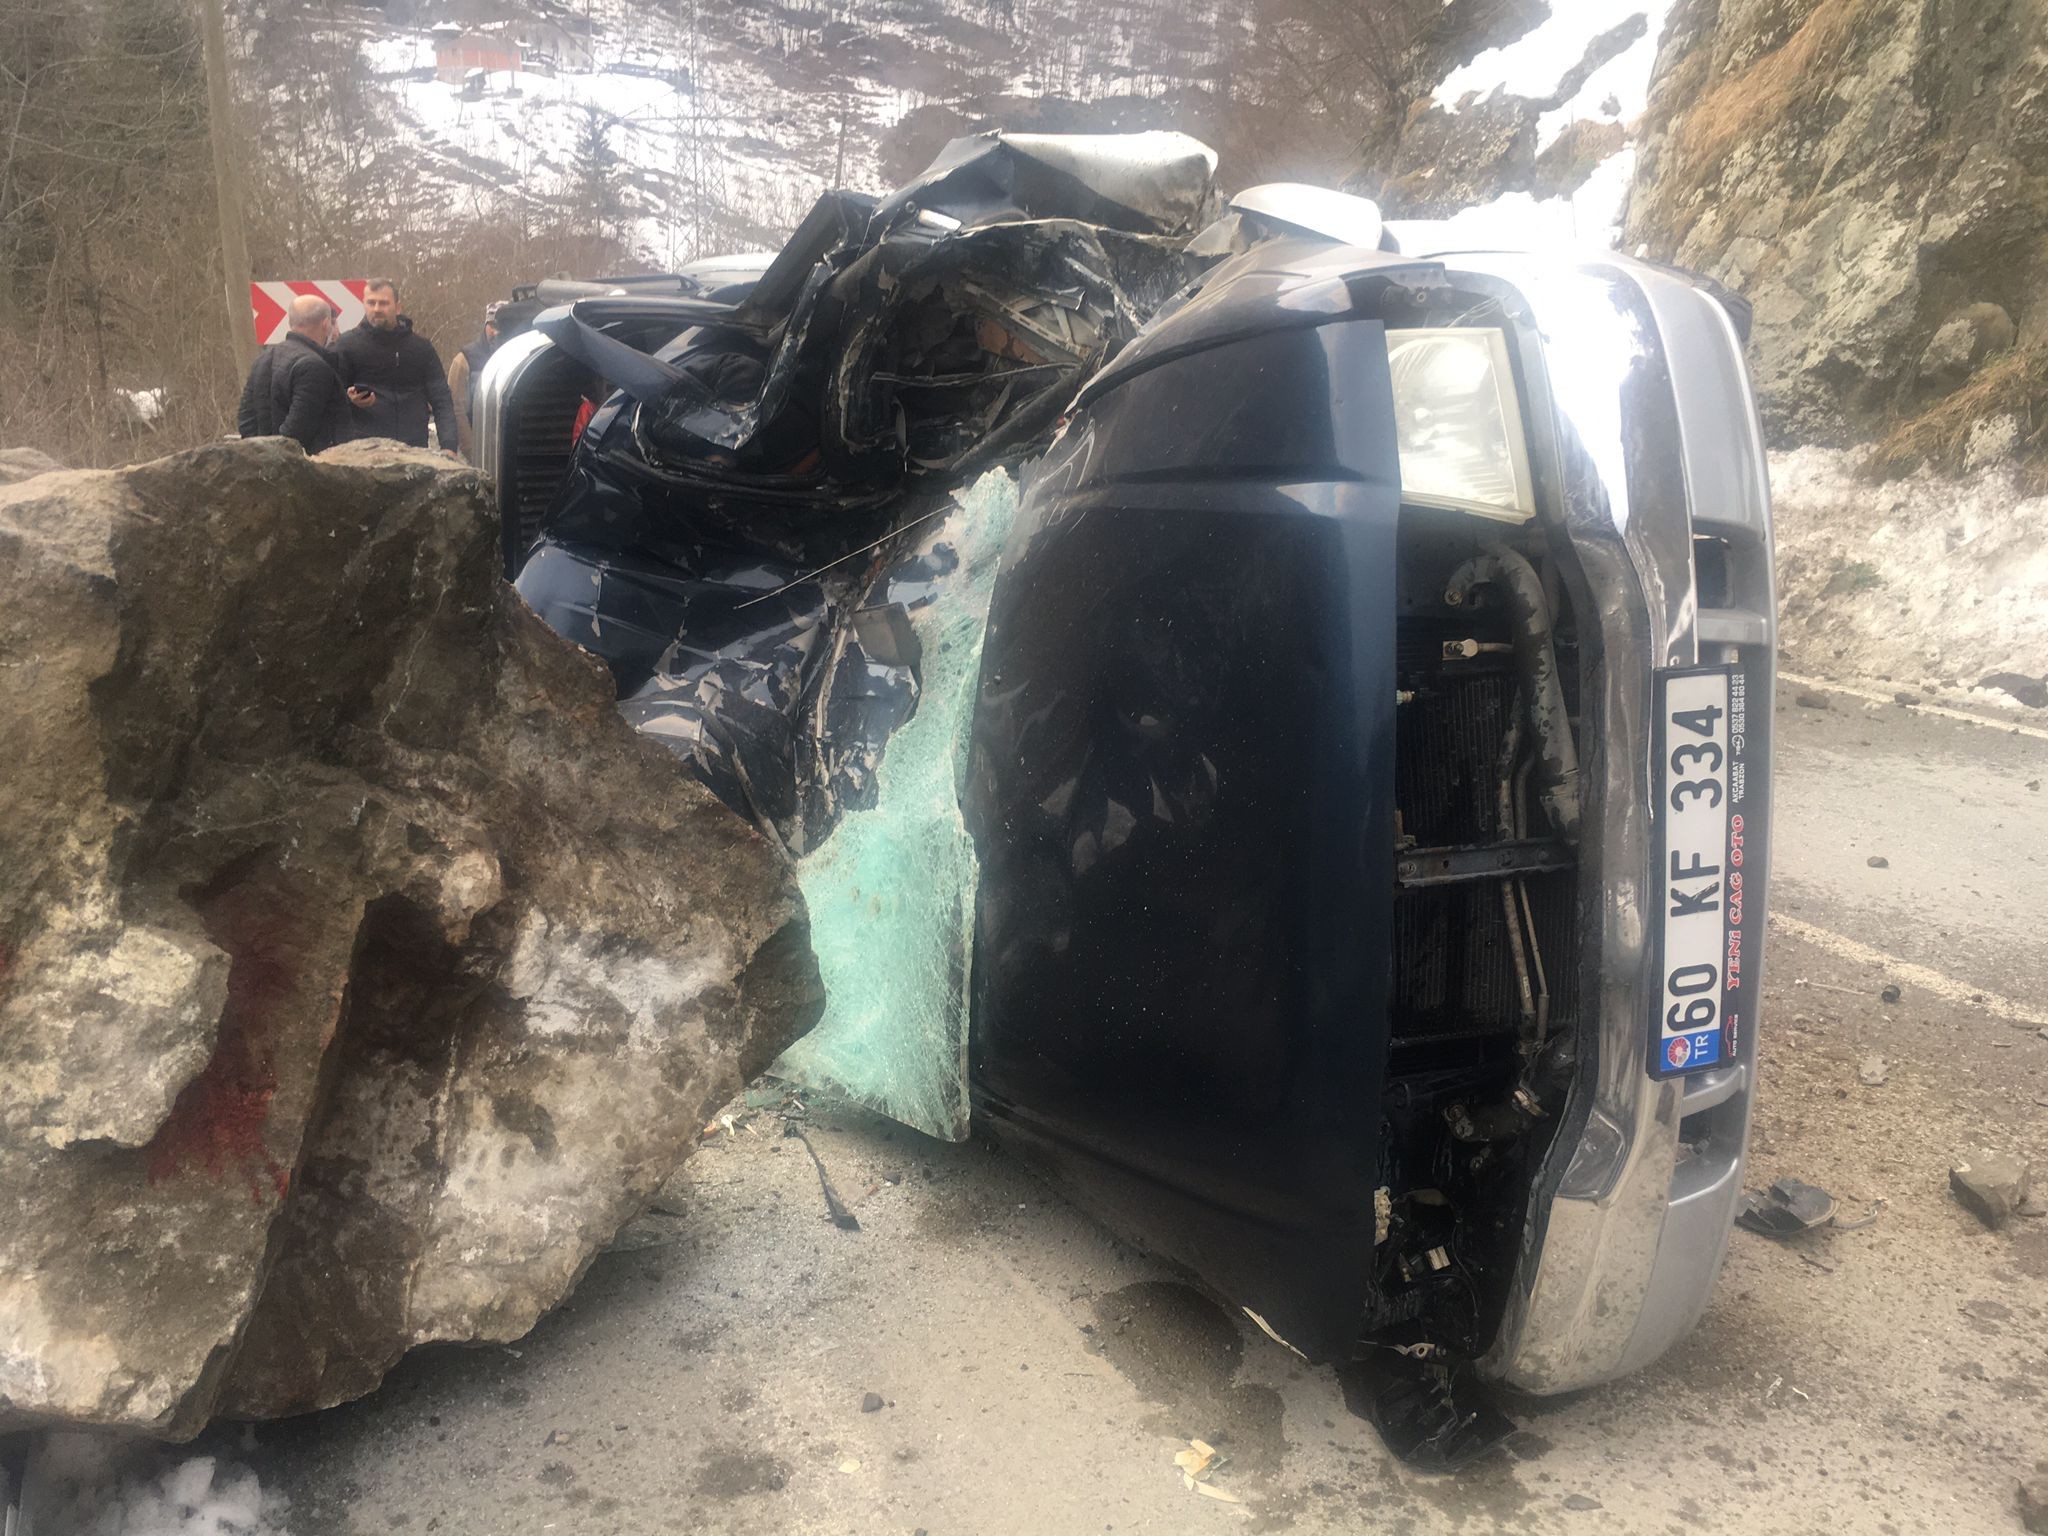 Trabzon’da akılalmaz felaket! Kaya parçası yoldan geçen arabanın üzerine düştü: 4 kişi hayatını kaybetti